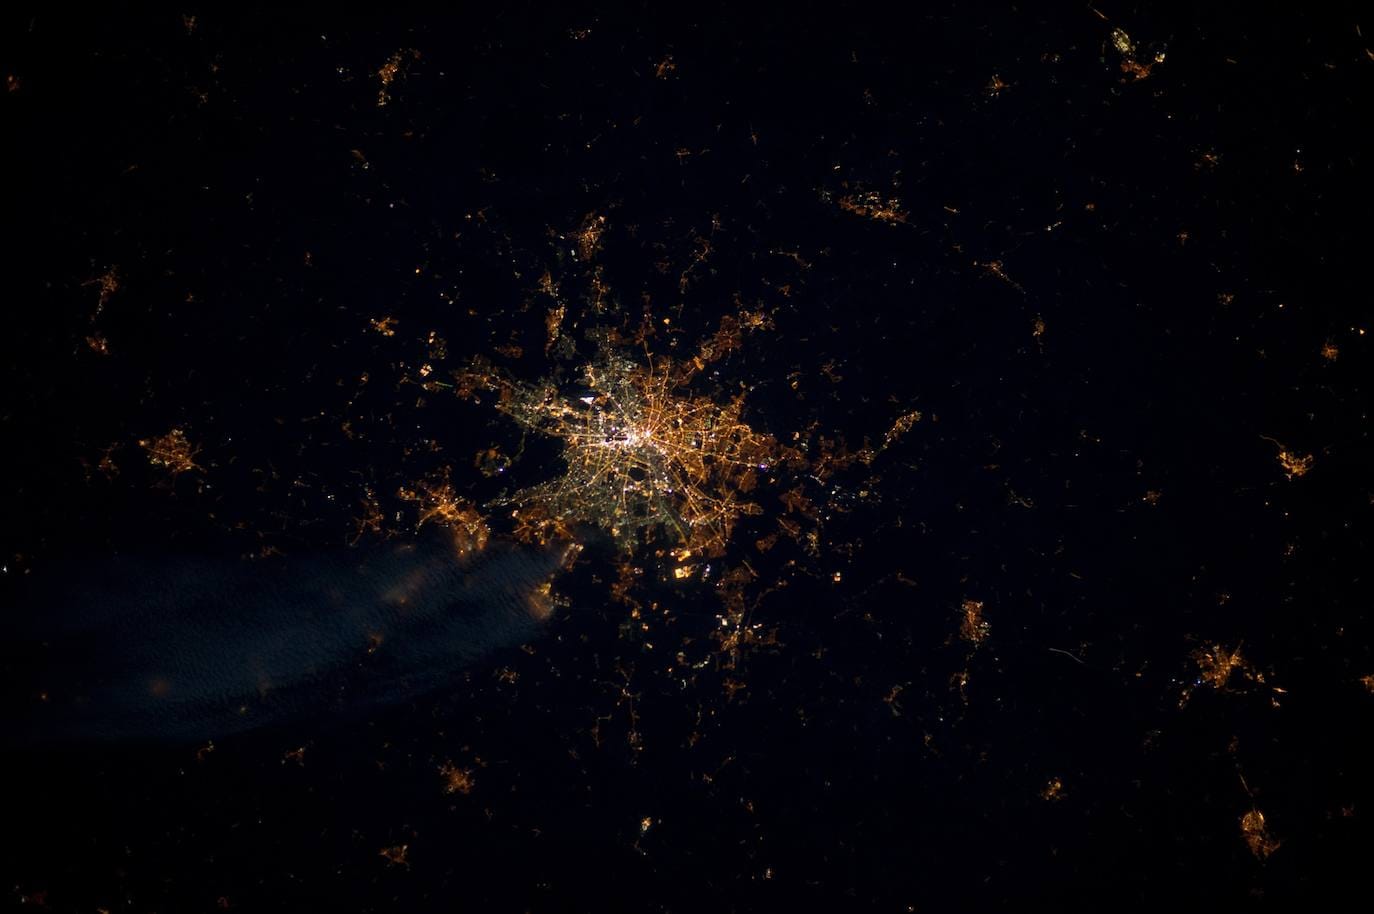 9. Berlín: imagen tomada por el astronauta André Kuipers desde la Estación Espacial Internacional. 